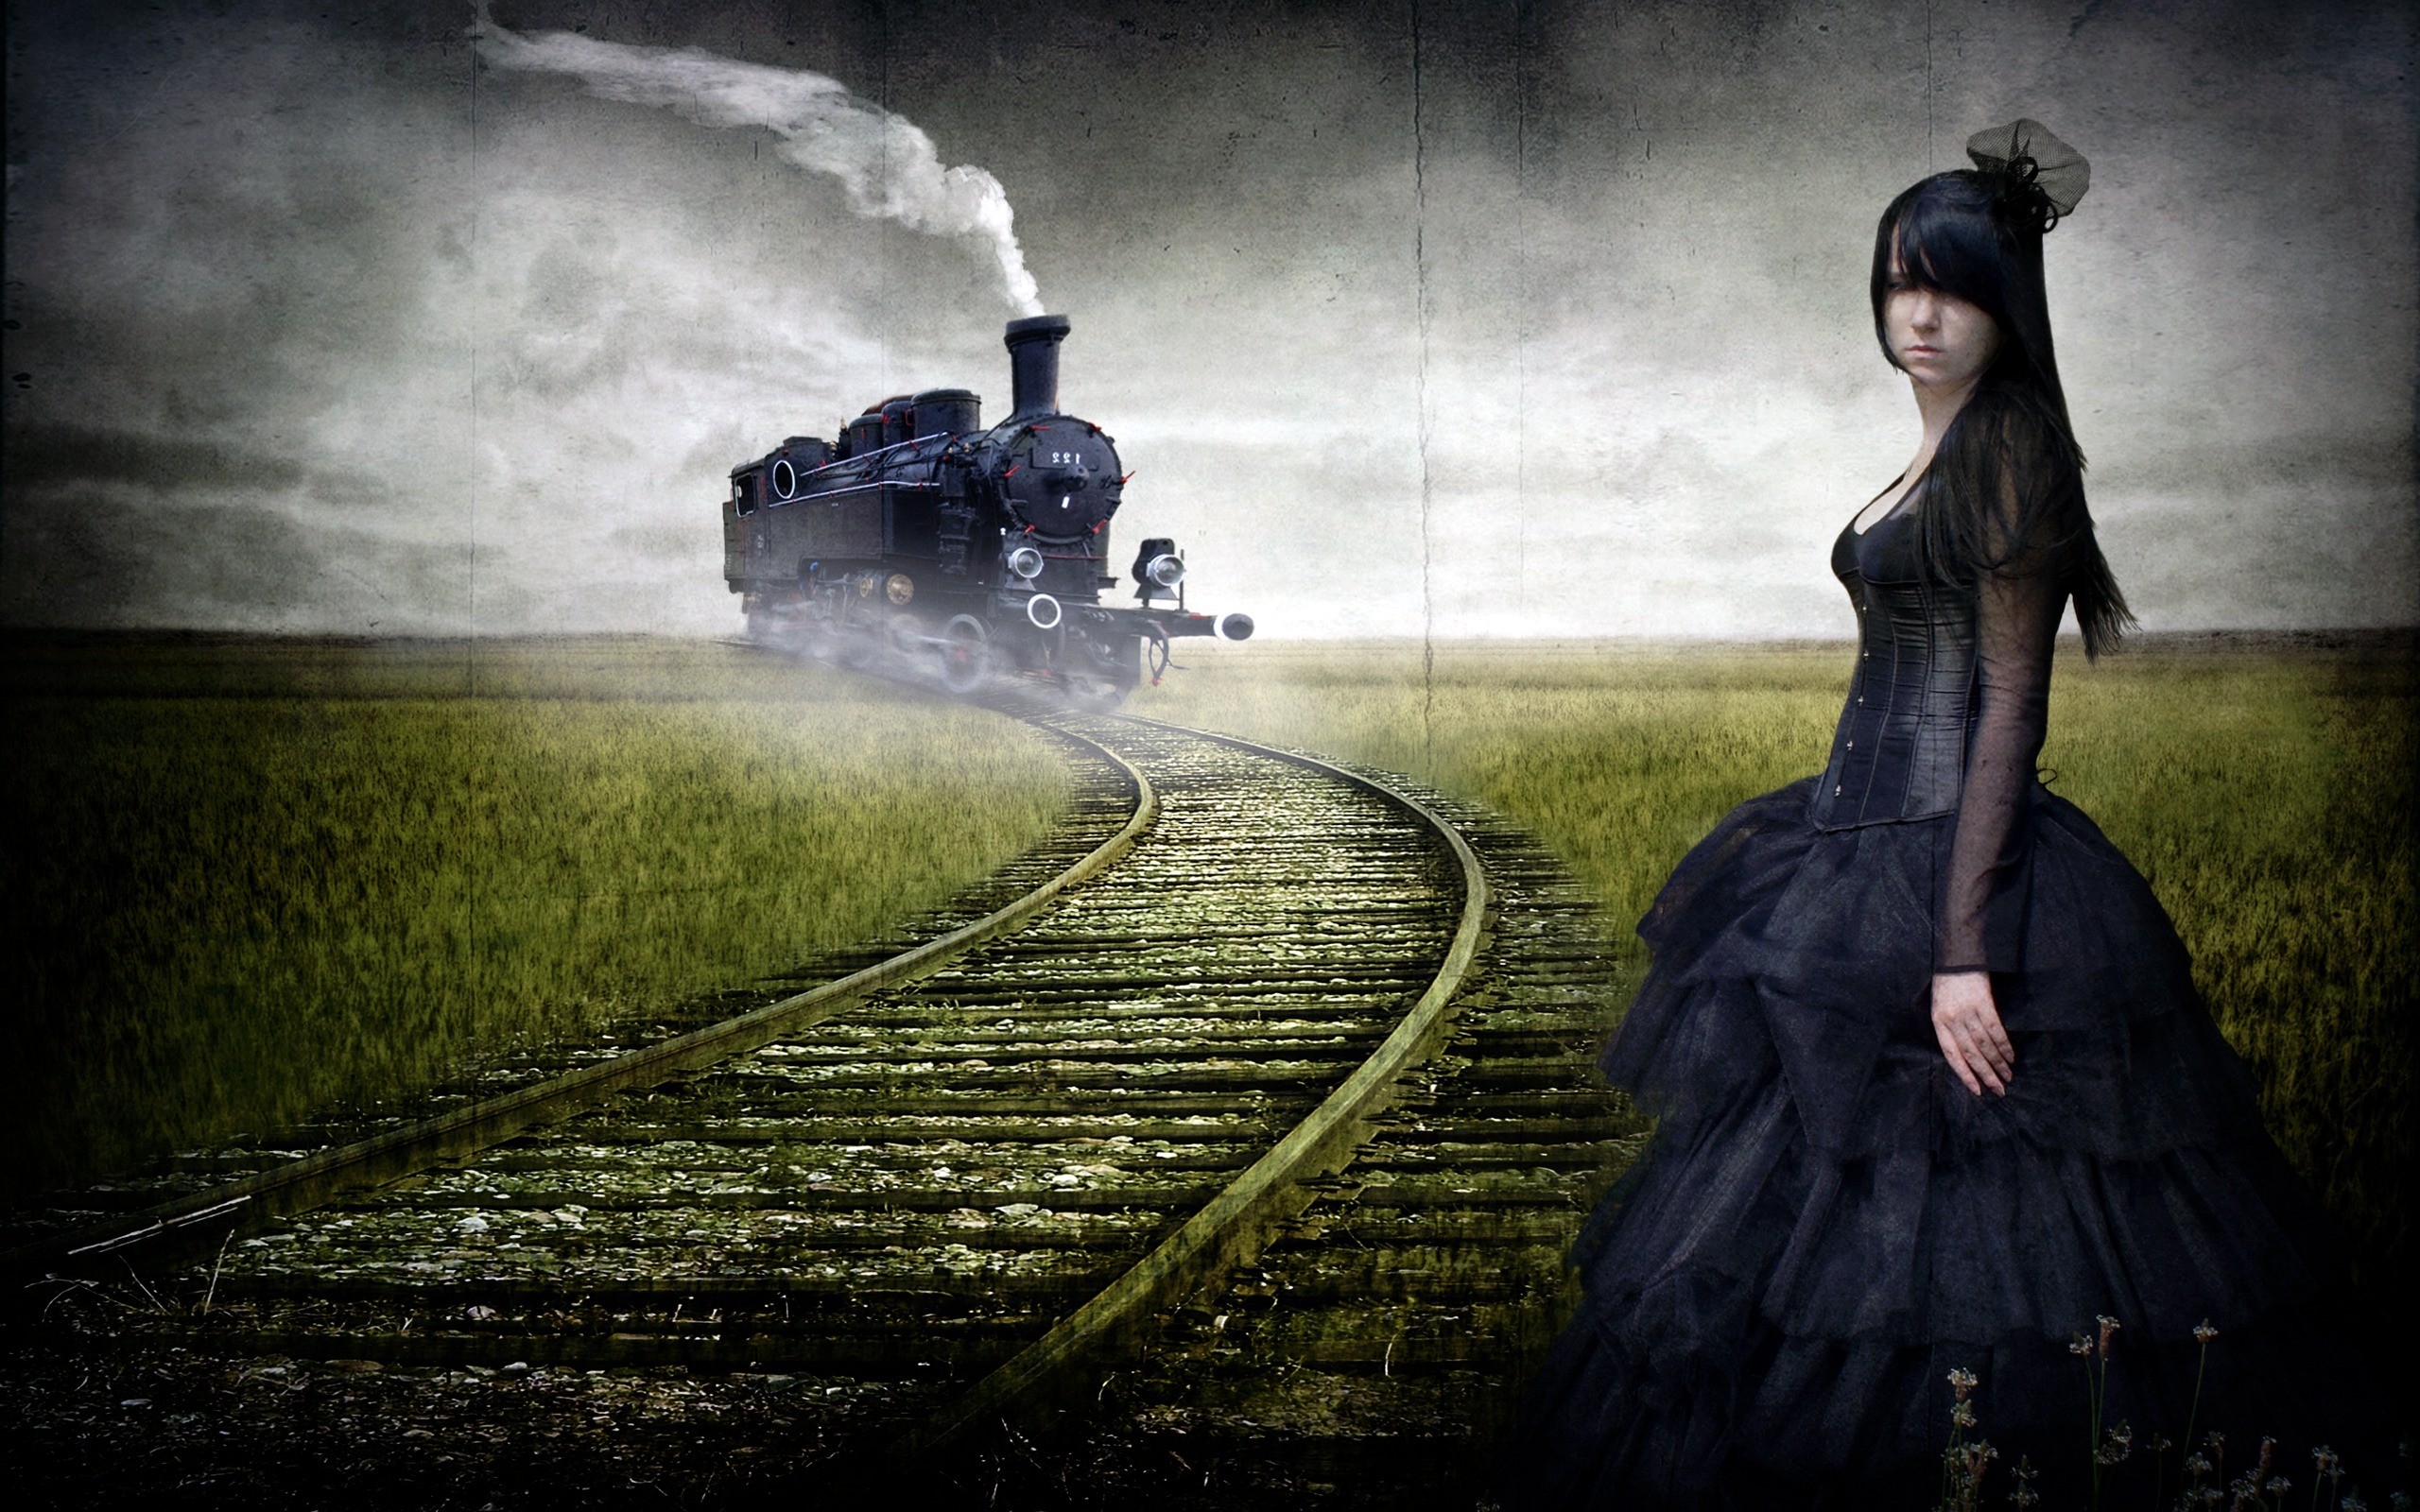 General 2560x1600 women steam locomotive railway Gothic goths alternative subculture